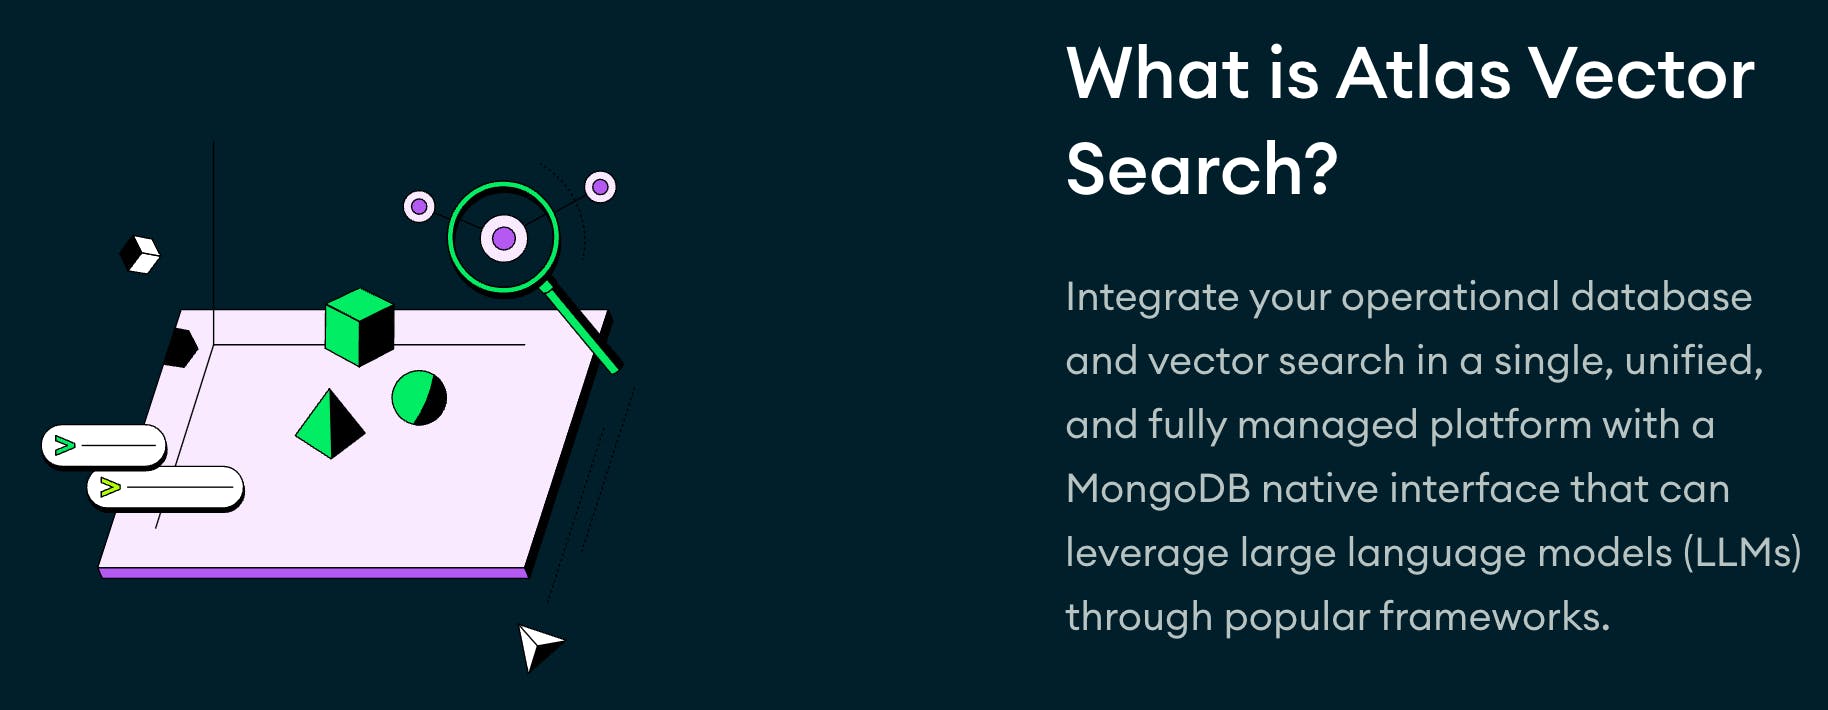 An image describing atlas vector search.